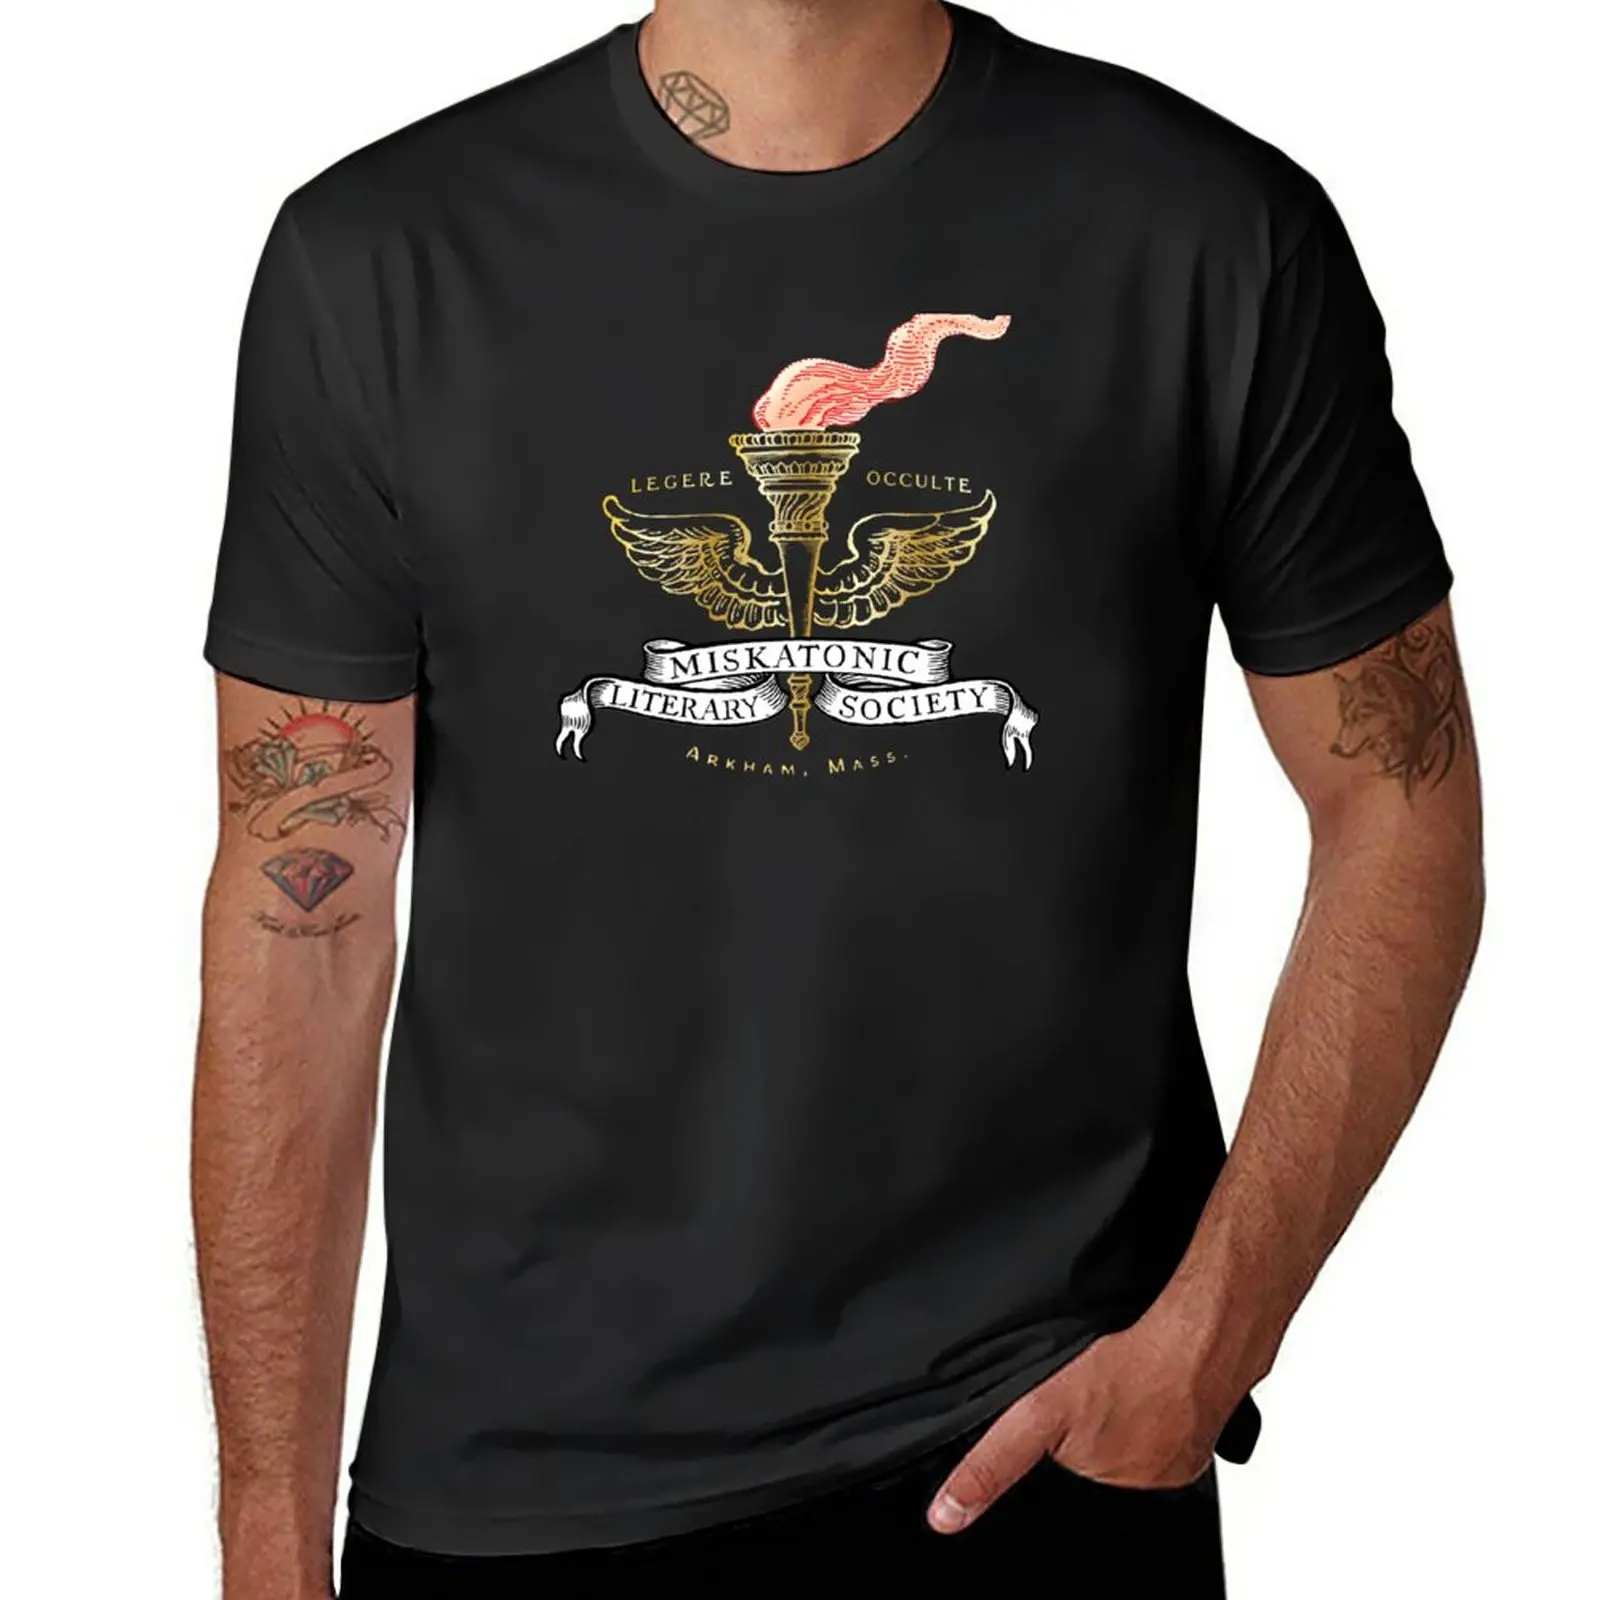 

Новая футболка Miskatonic футболка «Society» с быстрой сушкой, короткая футболка большого размера, футболки swea, мужские футболки